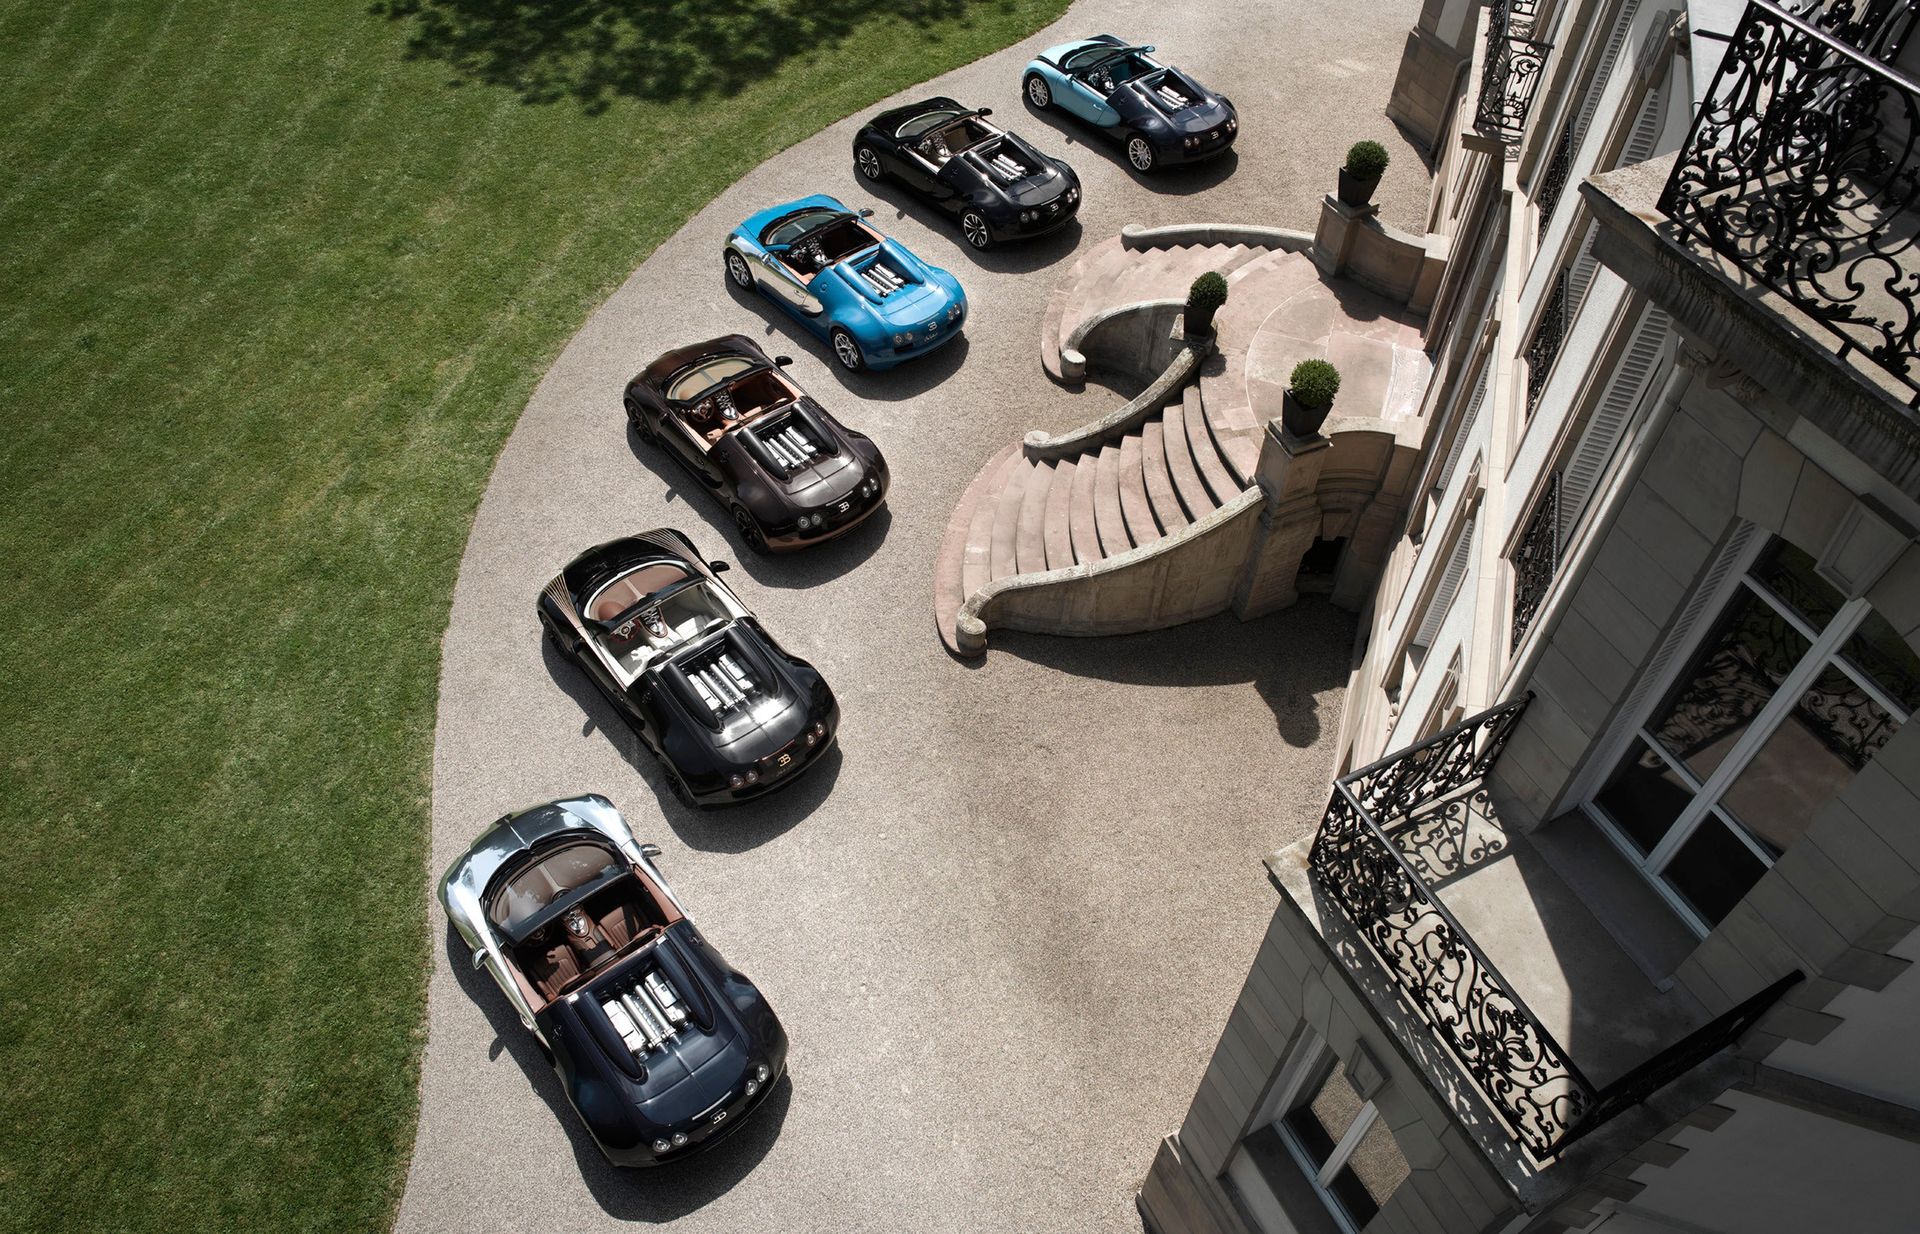 Niemiecka policja skonfiskowała cztery bugatti veyron. W tle międzynarodowa afera